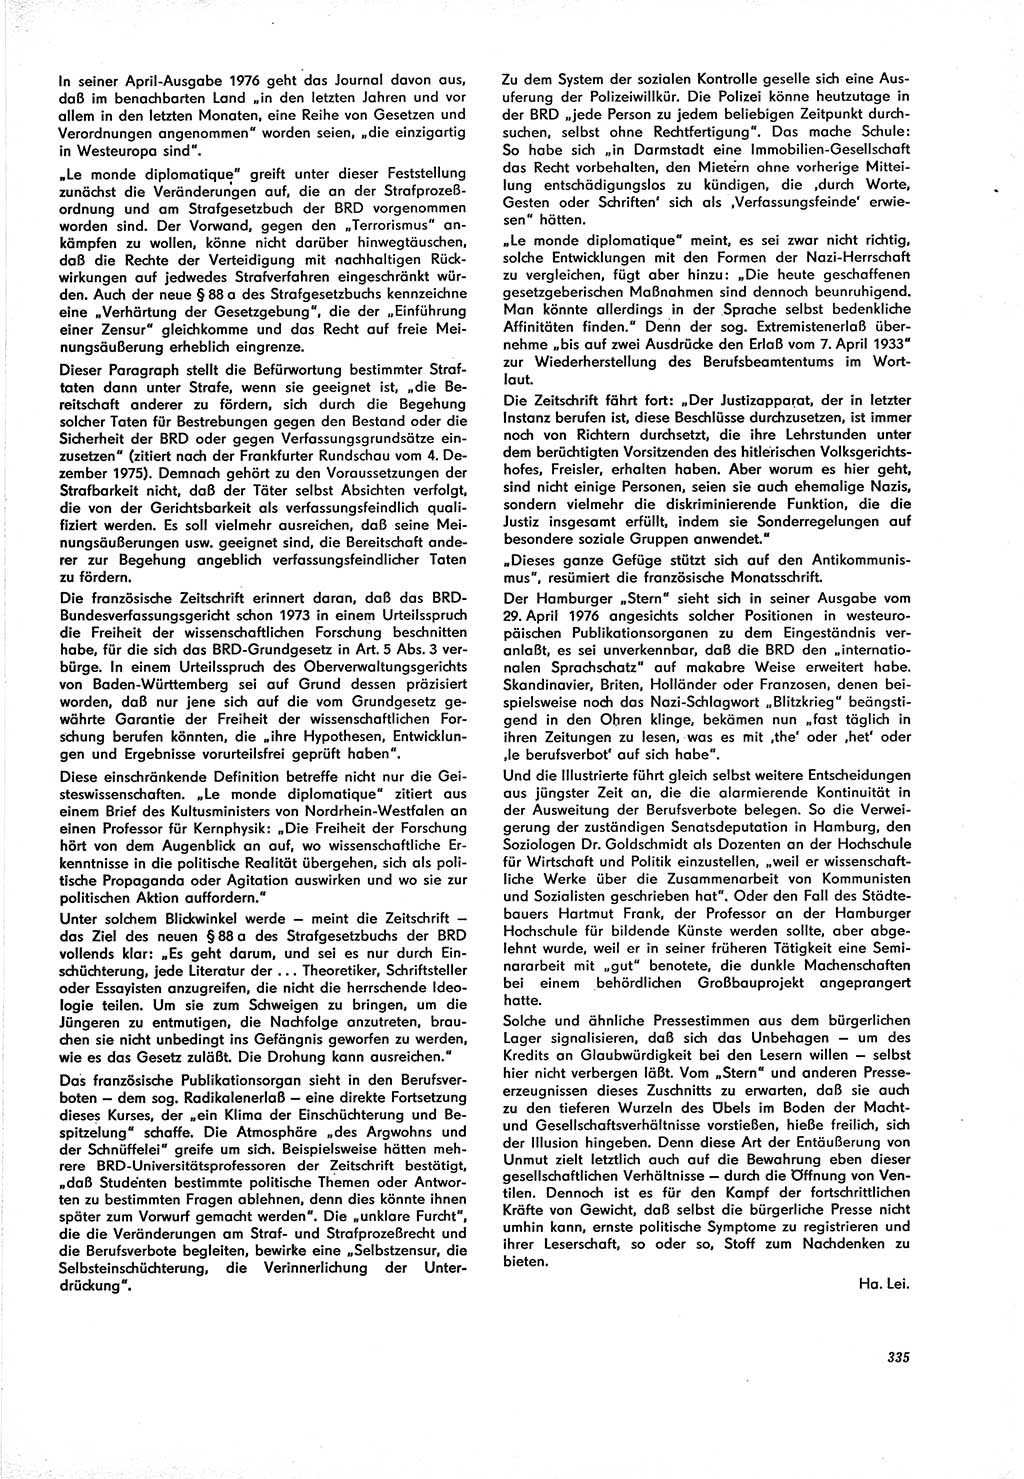 Neue Justiz (NJ), Zeitschrift für Recht und Rechtswissenschaft [Deutsche Demokratische Republik (DDR)], 30. Jahrgang 1976, Seite 335 (NJ DDR 1976, S. 335)